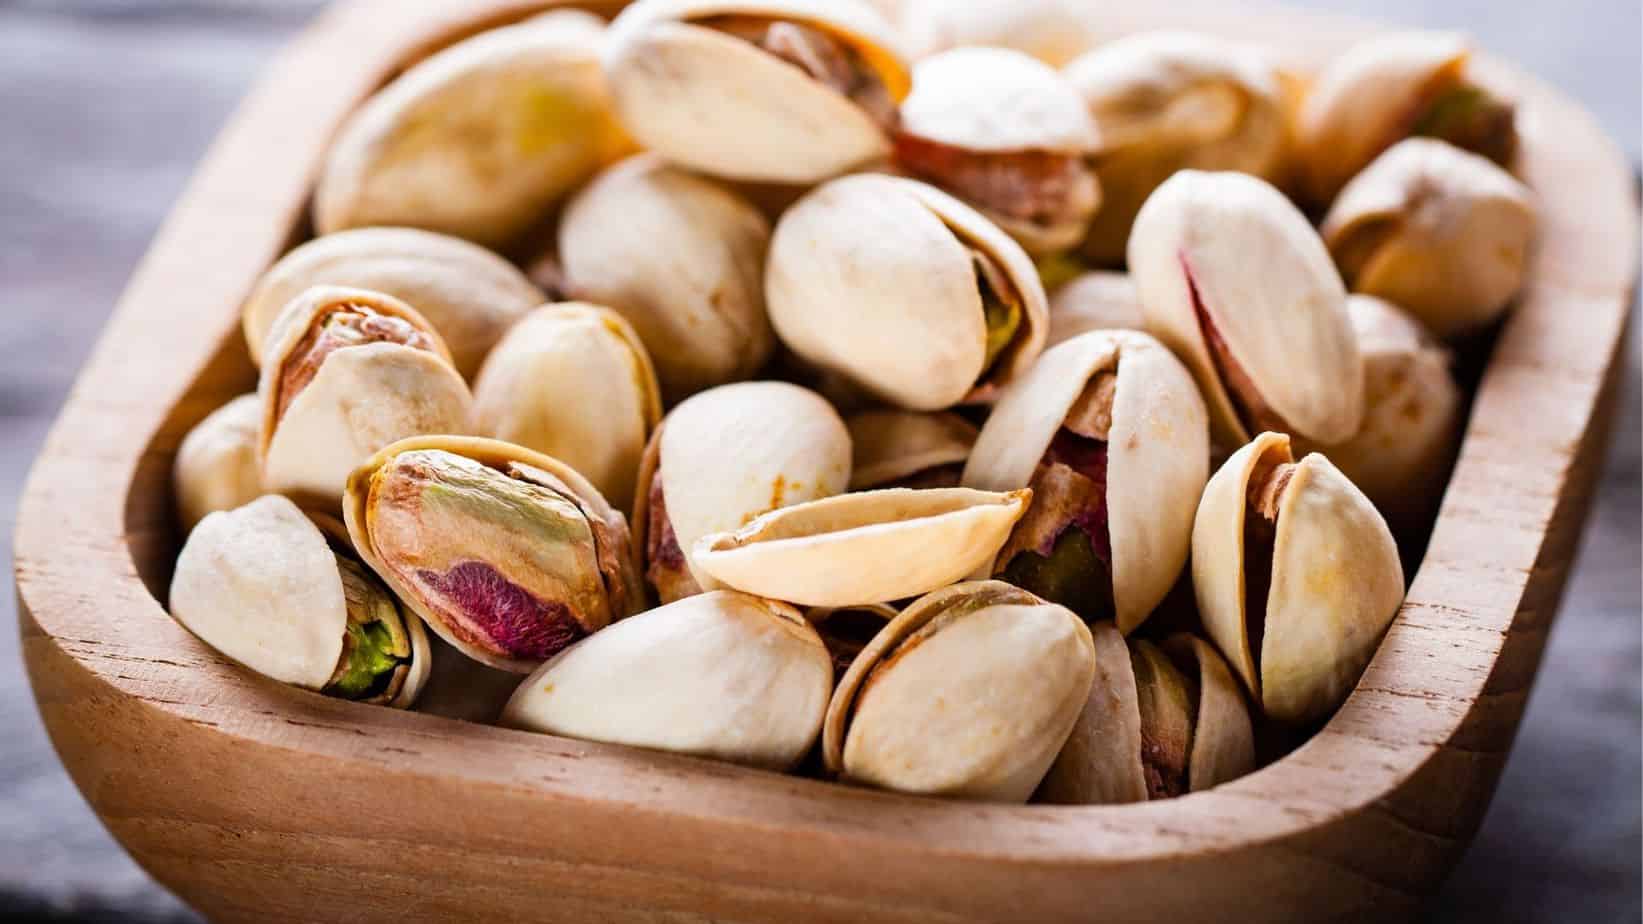 pistachio nut bowls